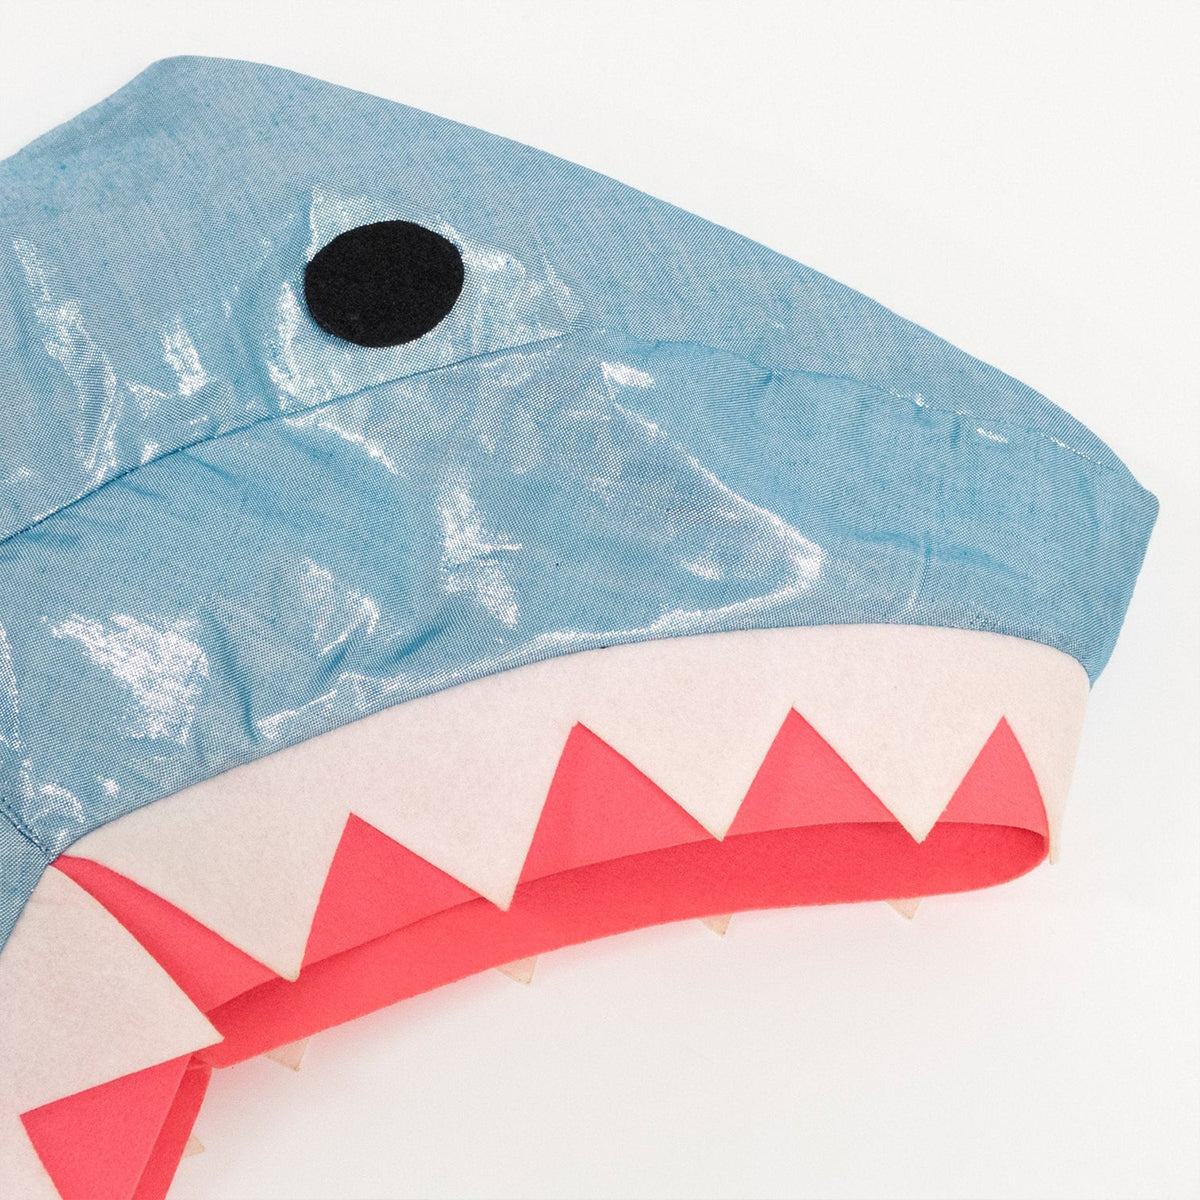 Shark Cape Dress Up Kit